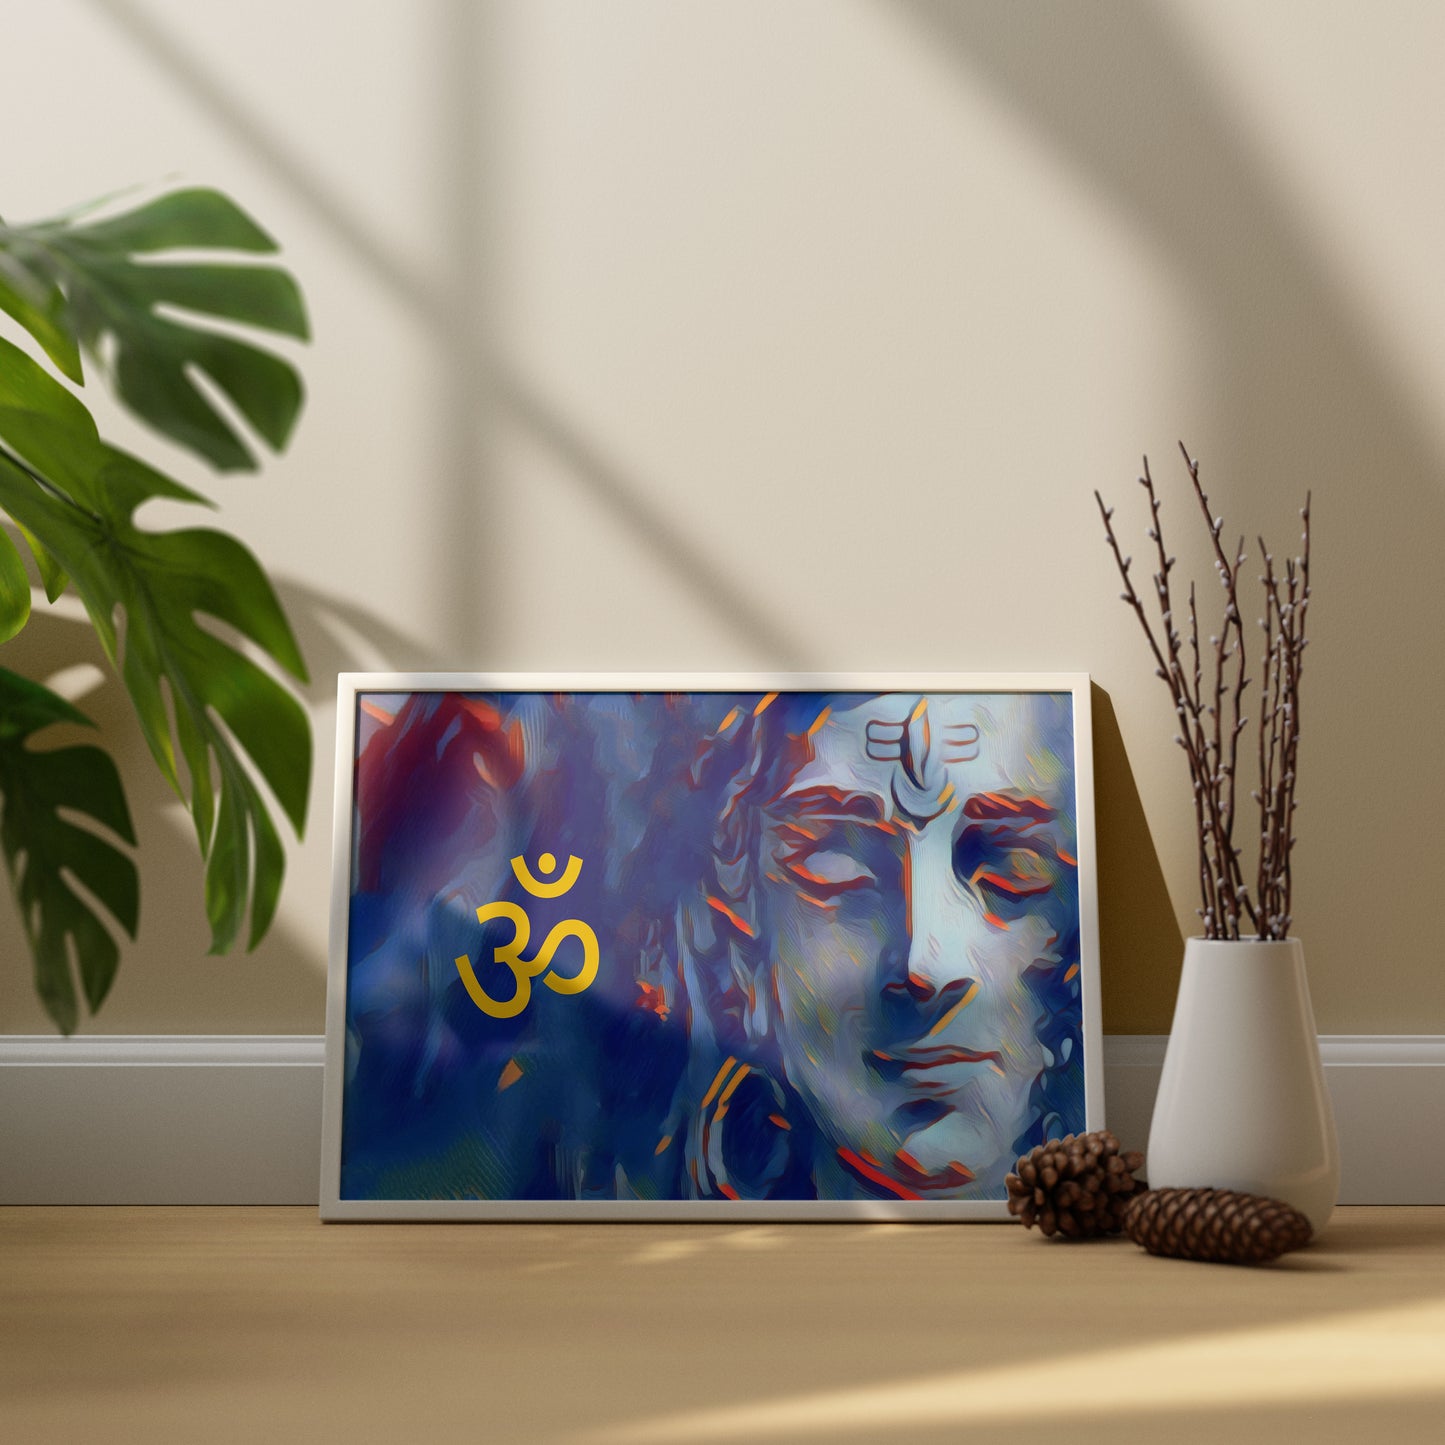 Lord Shiva in Meditation Art